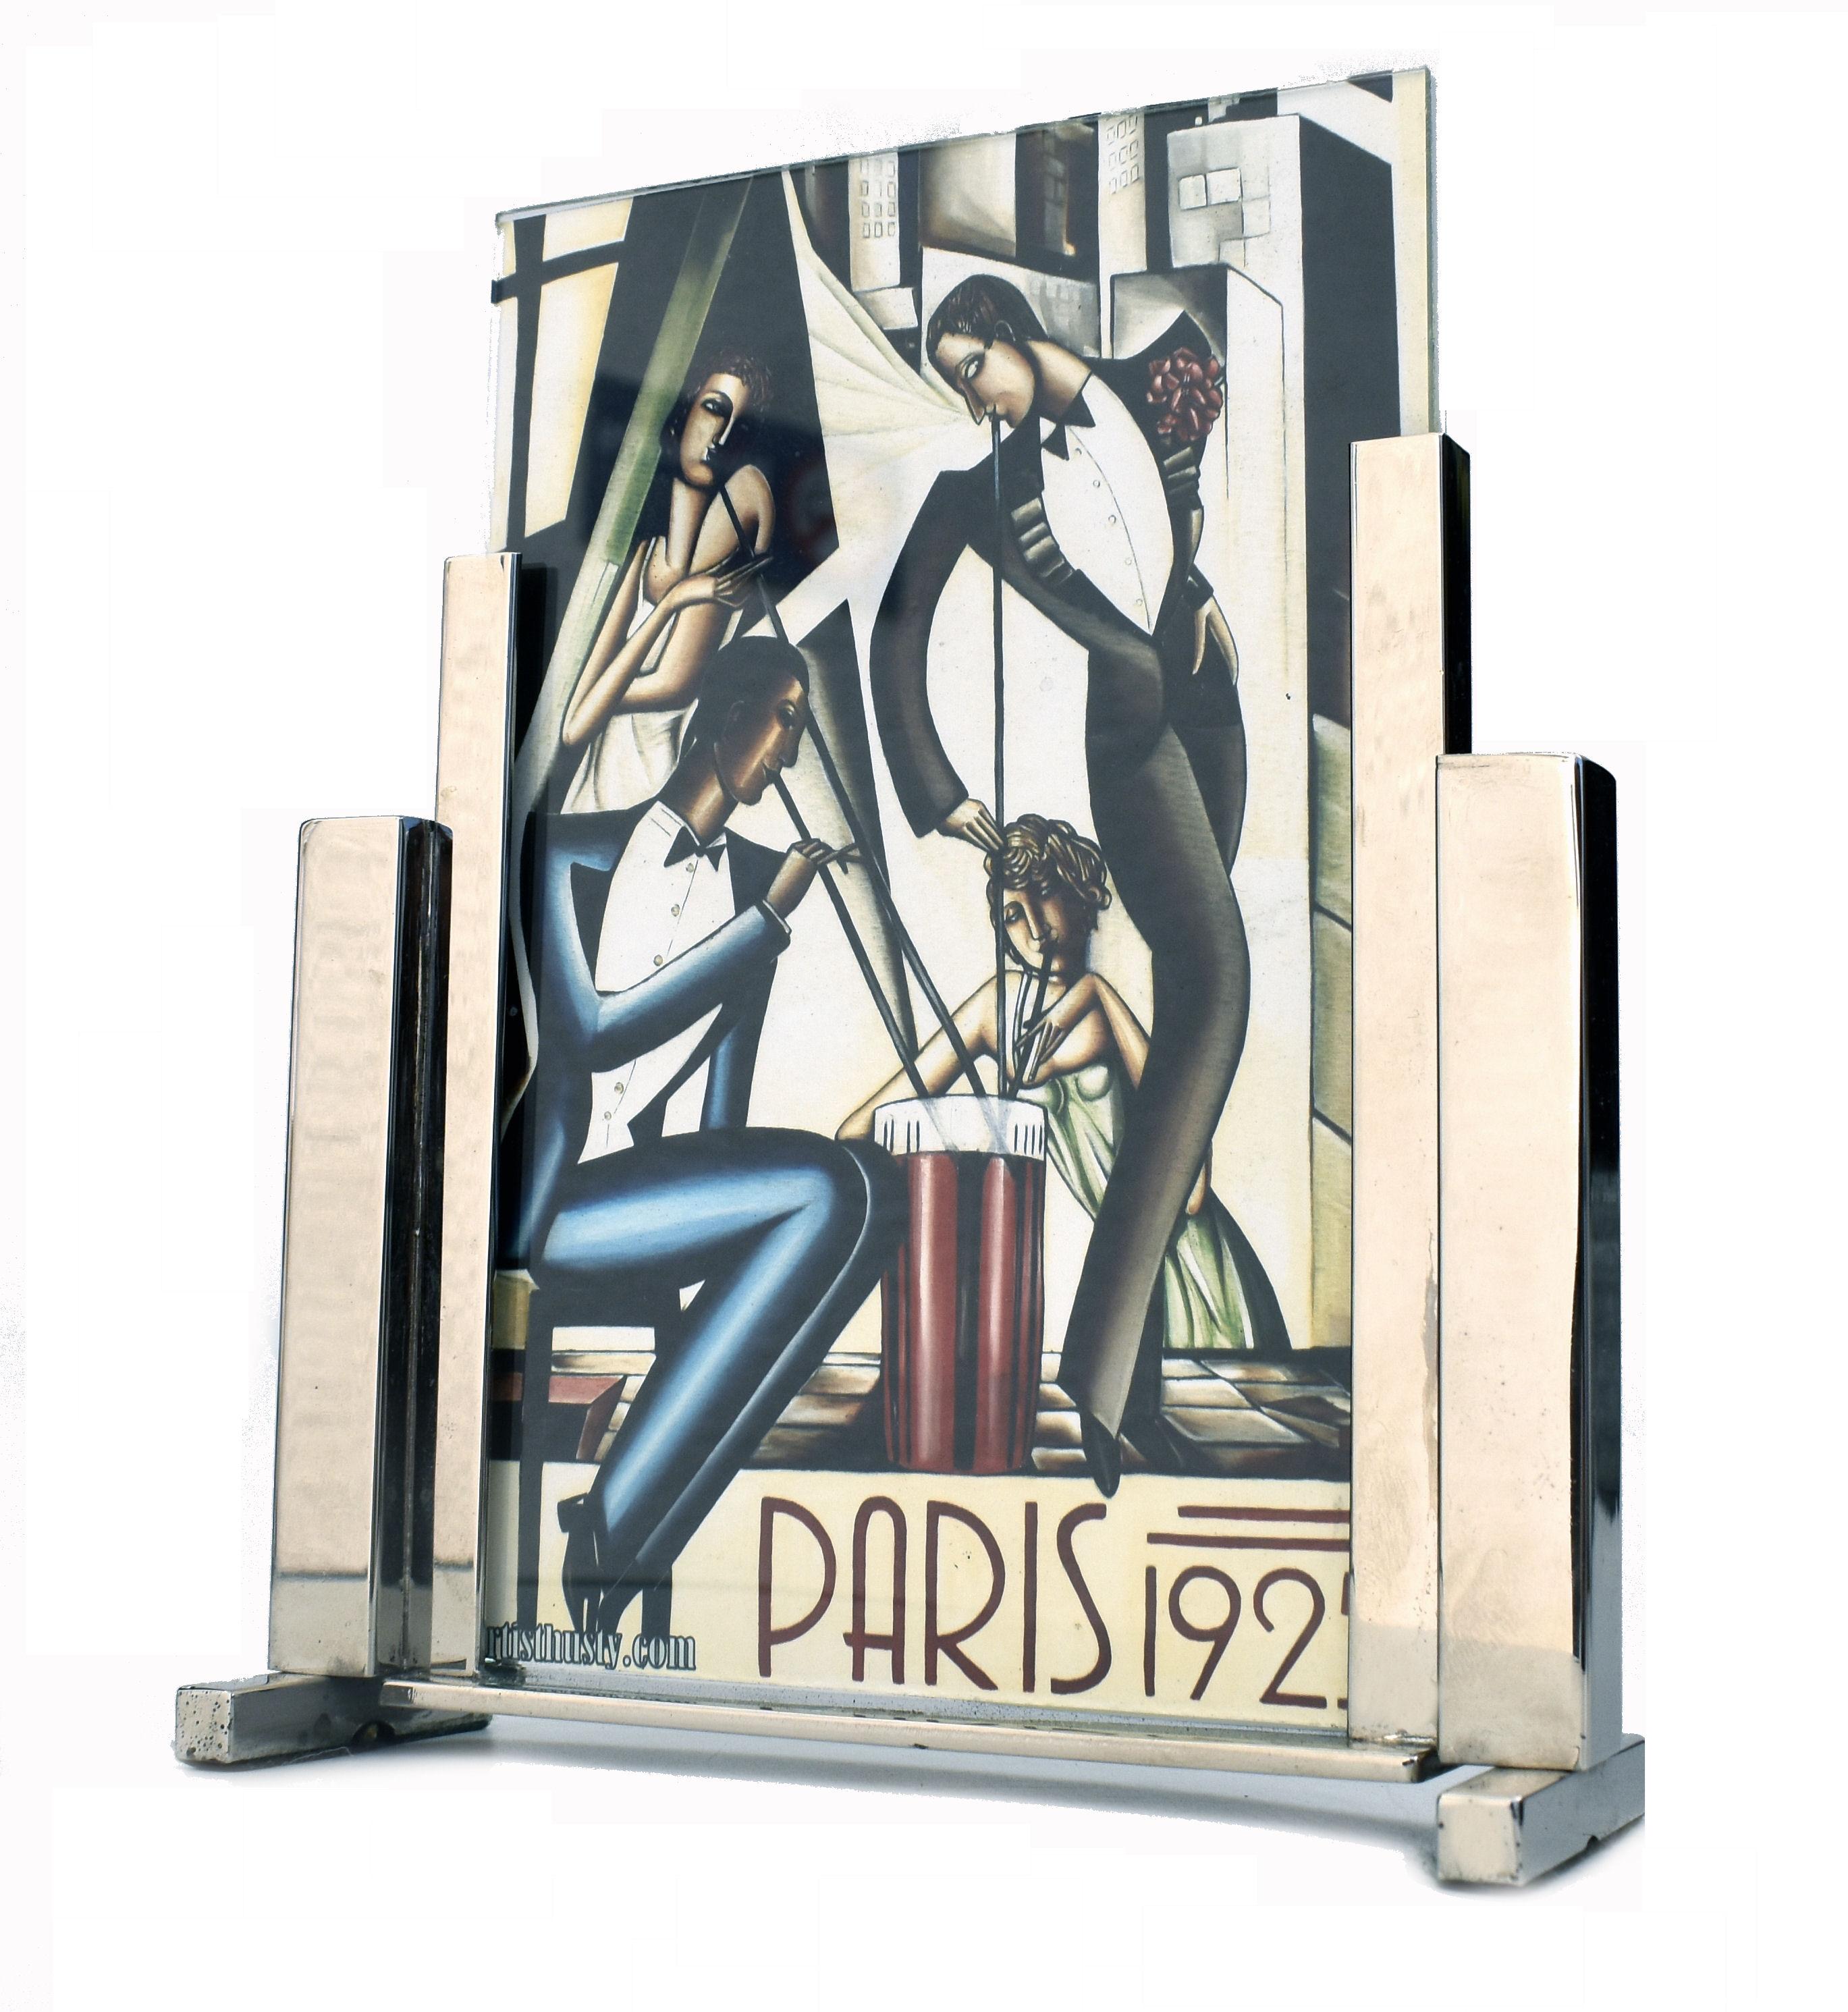 Cadre photo moderniste Art déco des années 1930 très élégant en chrome et verre. Le cadre comporte deux morceaux de verre qui s'insèrent dans le support chromé, ce qui permet d'afficher une image des deux côtés du cadre autoportant. Taille idéale et